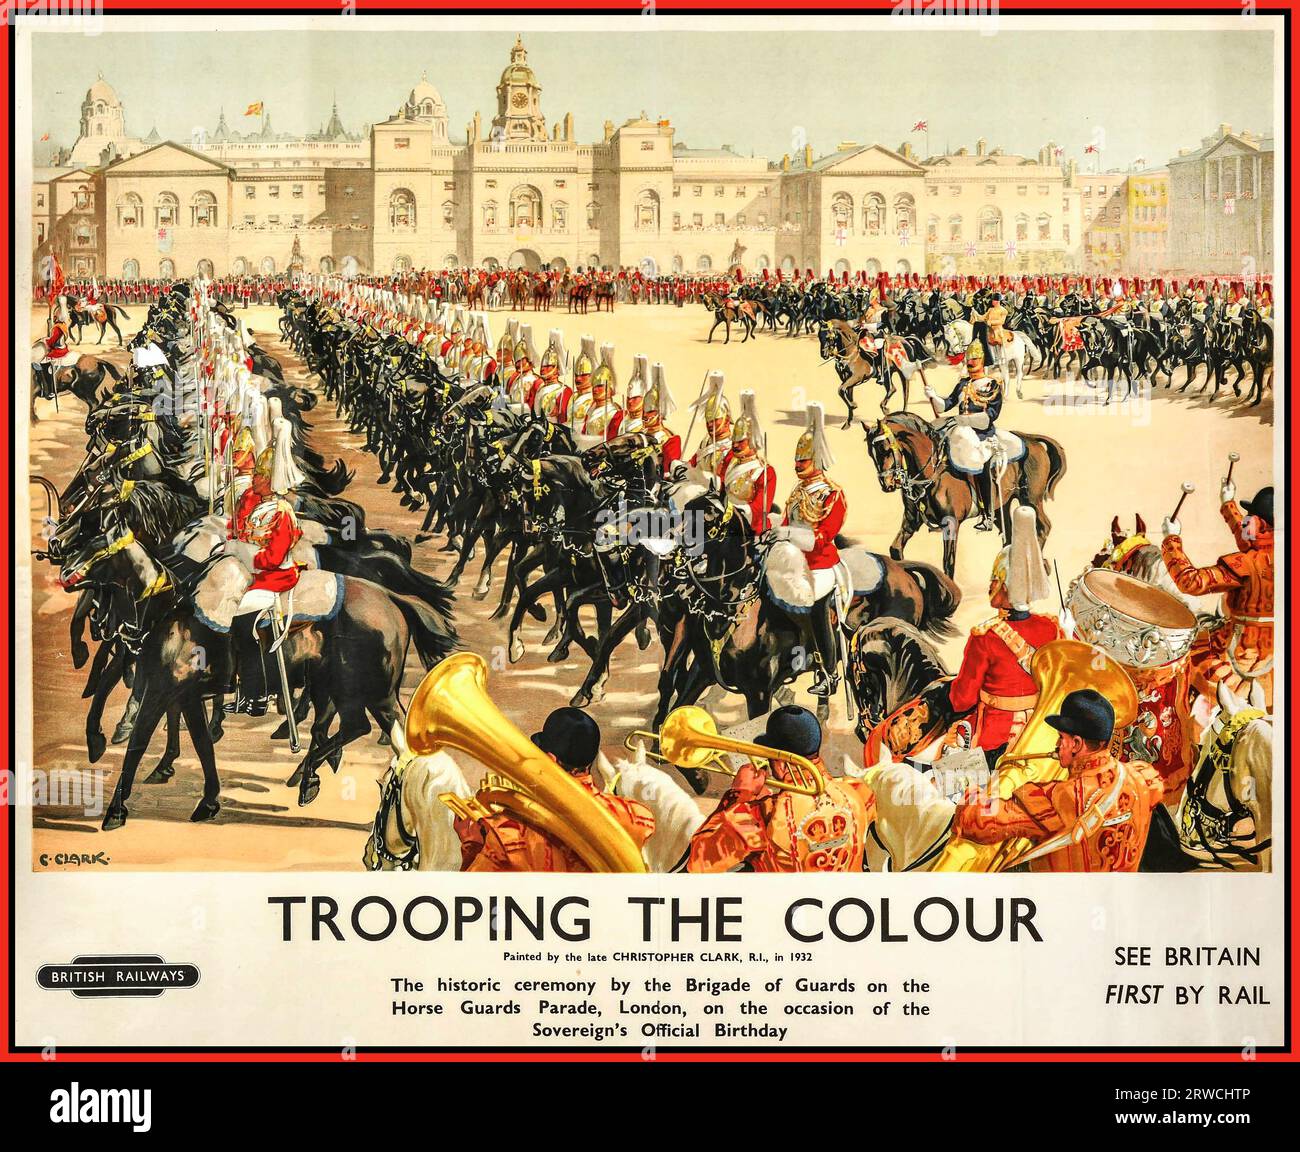 TROOPING THE COLOUR Vintage 1932 Poster mit der historischen Zeremonie bei der Horse Guards Parade der Brigade of Guards London anlässlich des offiziellen Geburtstags des Souveräns. Der Geburtstag des Souveräns wird offiziell mit der Zeremonie „Trooping the Colour“ (Königsparade zum Geburtstag) gefeiert. Diese eindrucksvolle Schauspiel der Pageanterie findet an einem Samstag im Juni von seinen persönlichen Truppen, der Haushaltsabteilung, auf der Pferdewächterparade statt, wobei seine Majestät der König selbst anwesend ist und den Gruß ergreift. British Rail 1930s Reiseplakat des Künstlers Christopher Clark Stockfoto